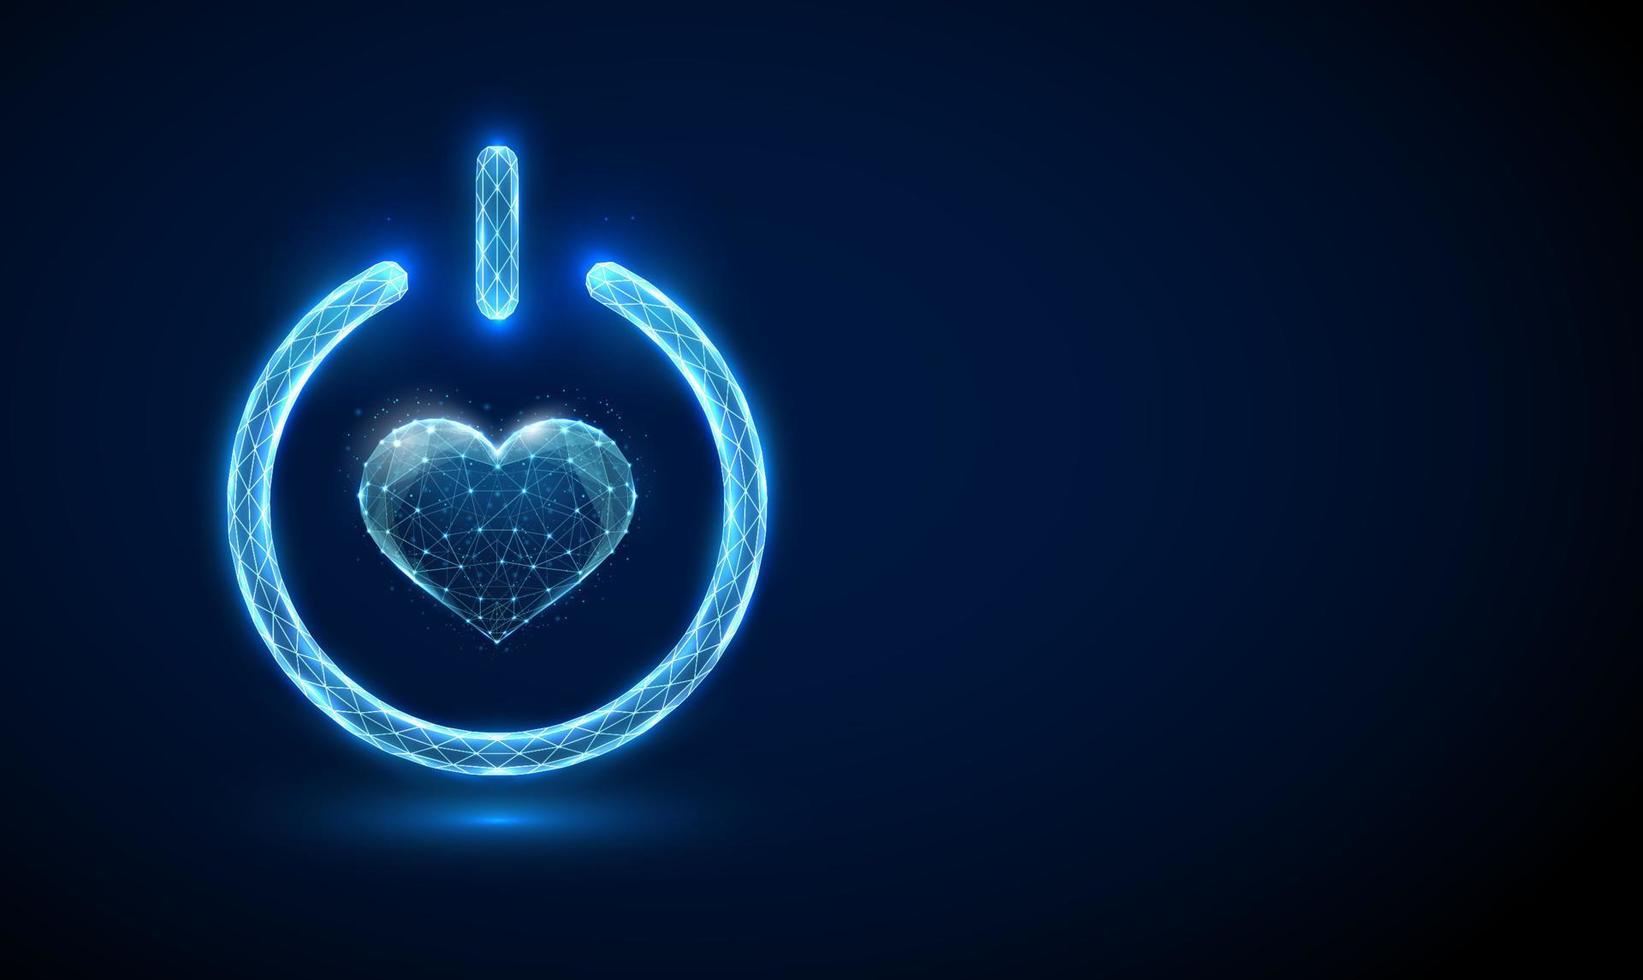 forma abstrata de coração azul no botão liga / desliga vetor